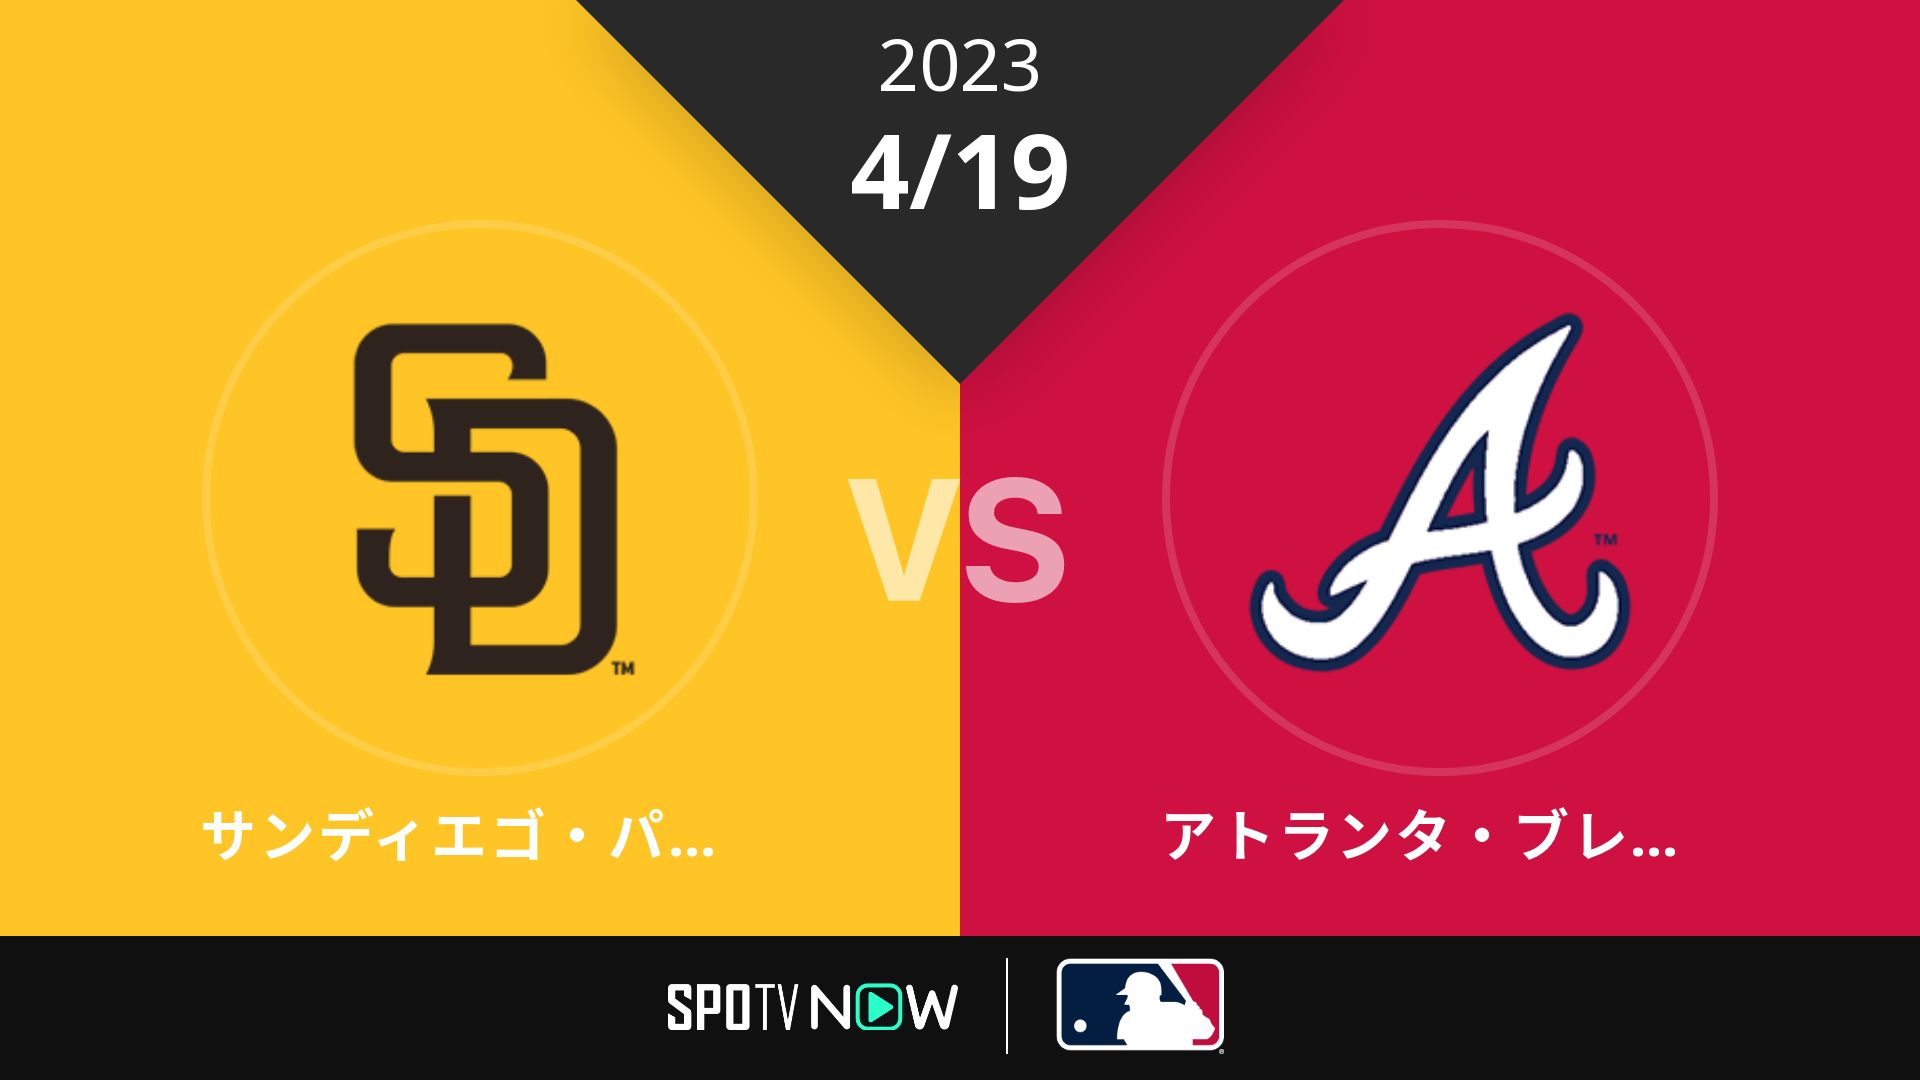 2023/4/19 パドレス vs ブレーブス [MLB]